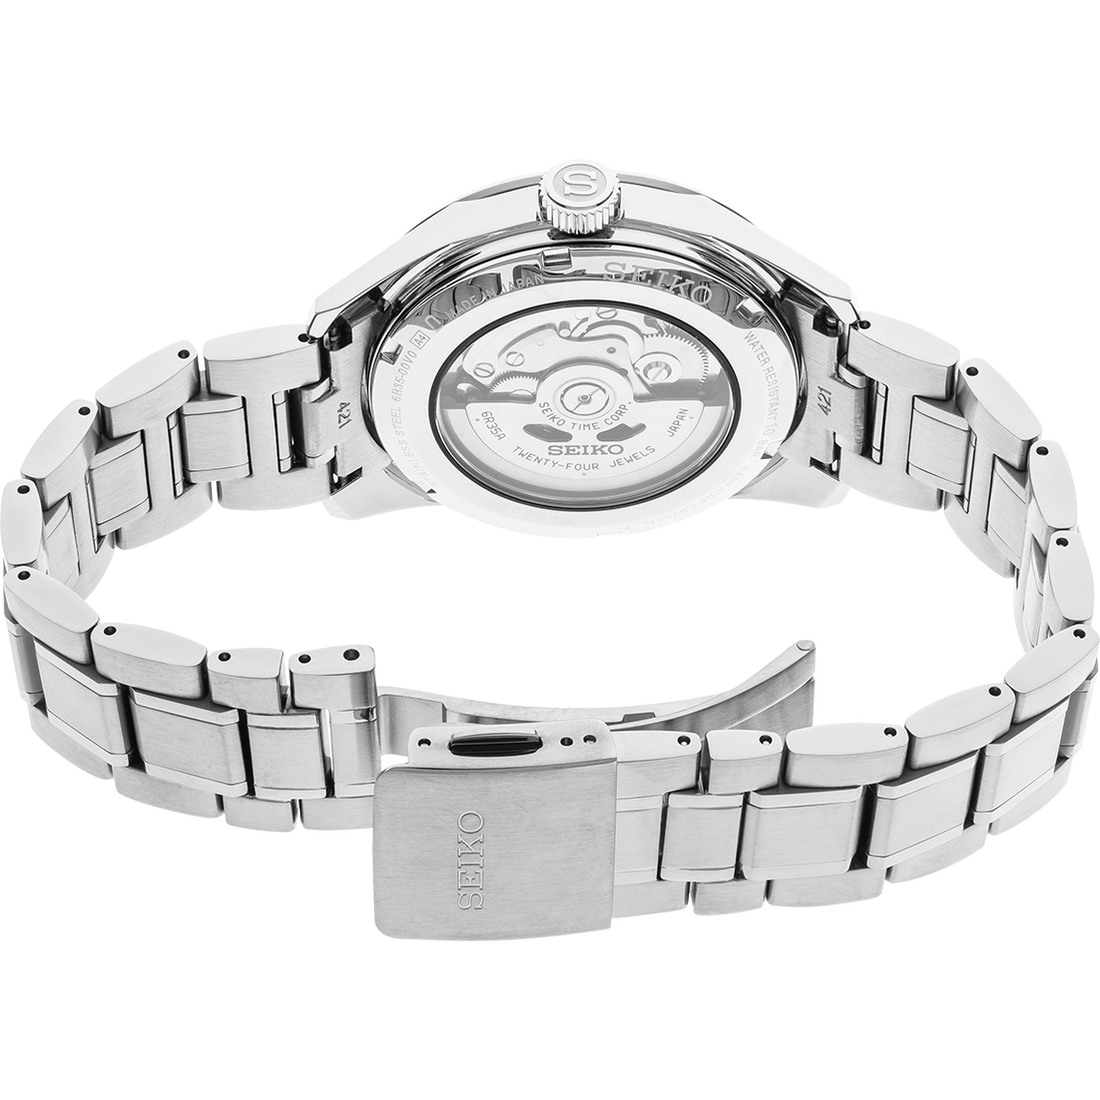 Seiko Presage SPB167 Blue Dial Automatic Dress Watch | Skeie's Jewelers